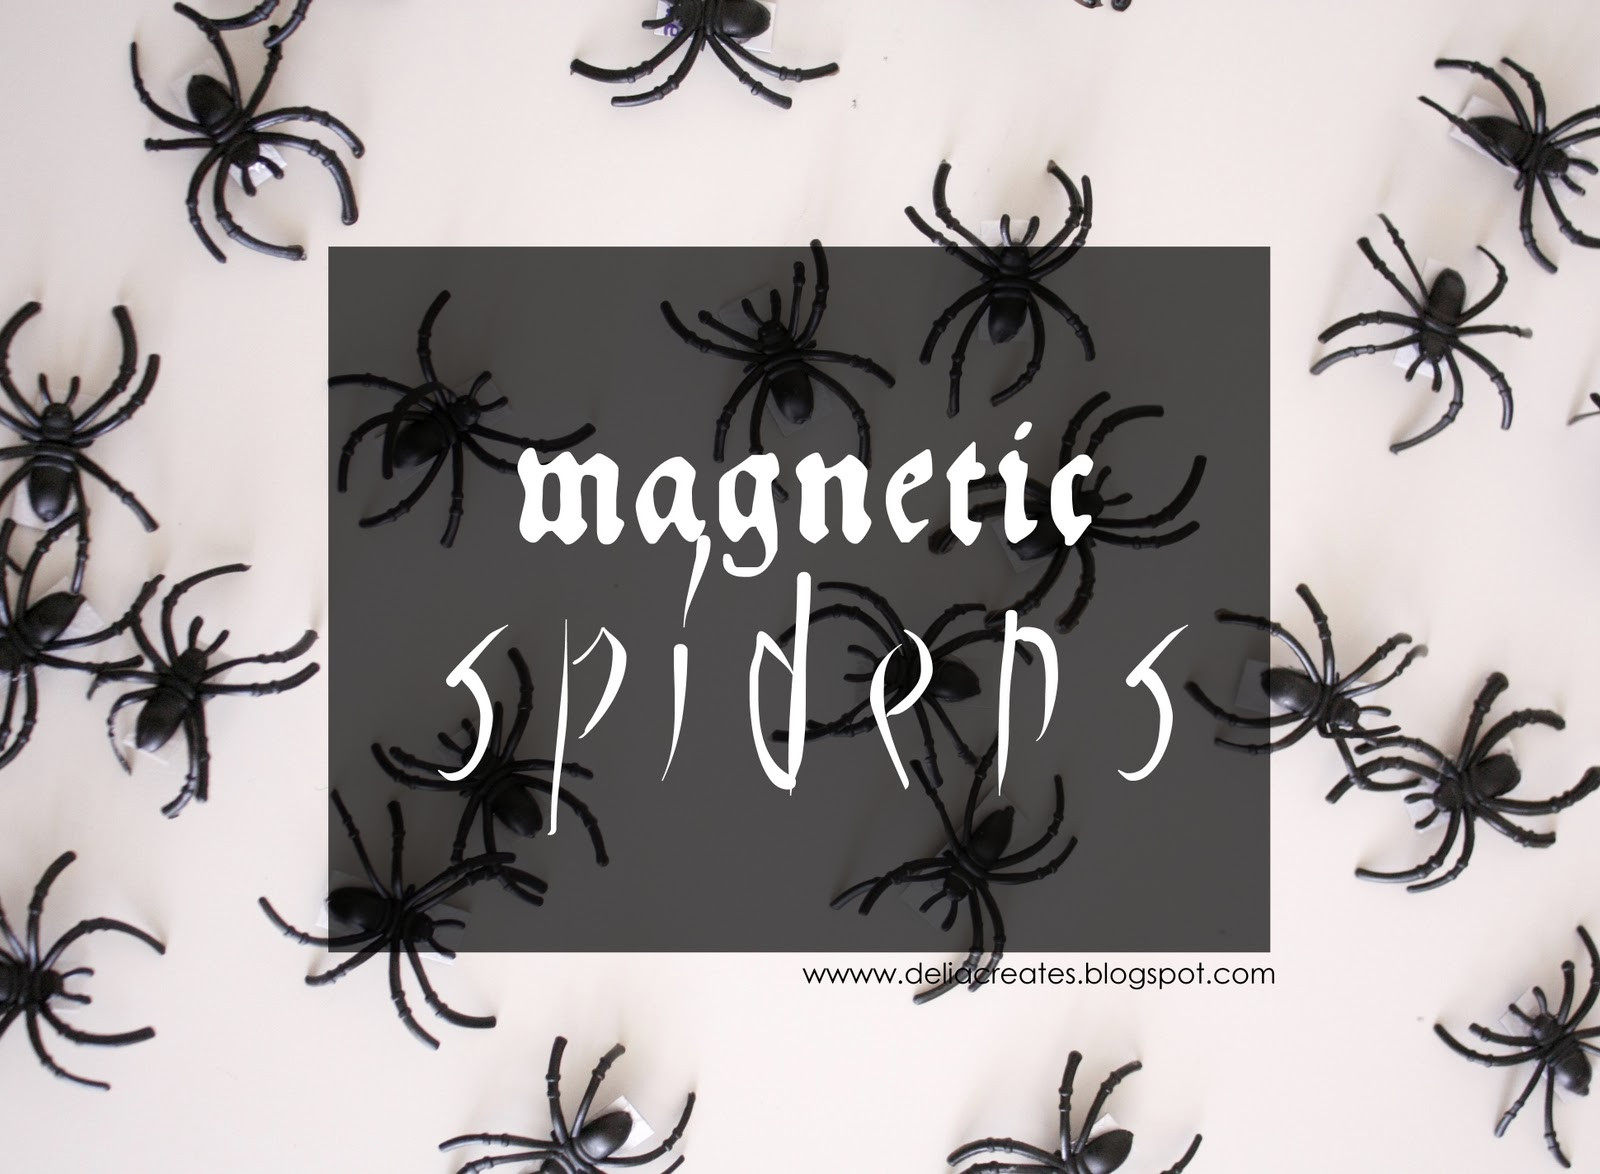 Halloween Garage Door Magnets
 Halloween Magnetic Spiders